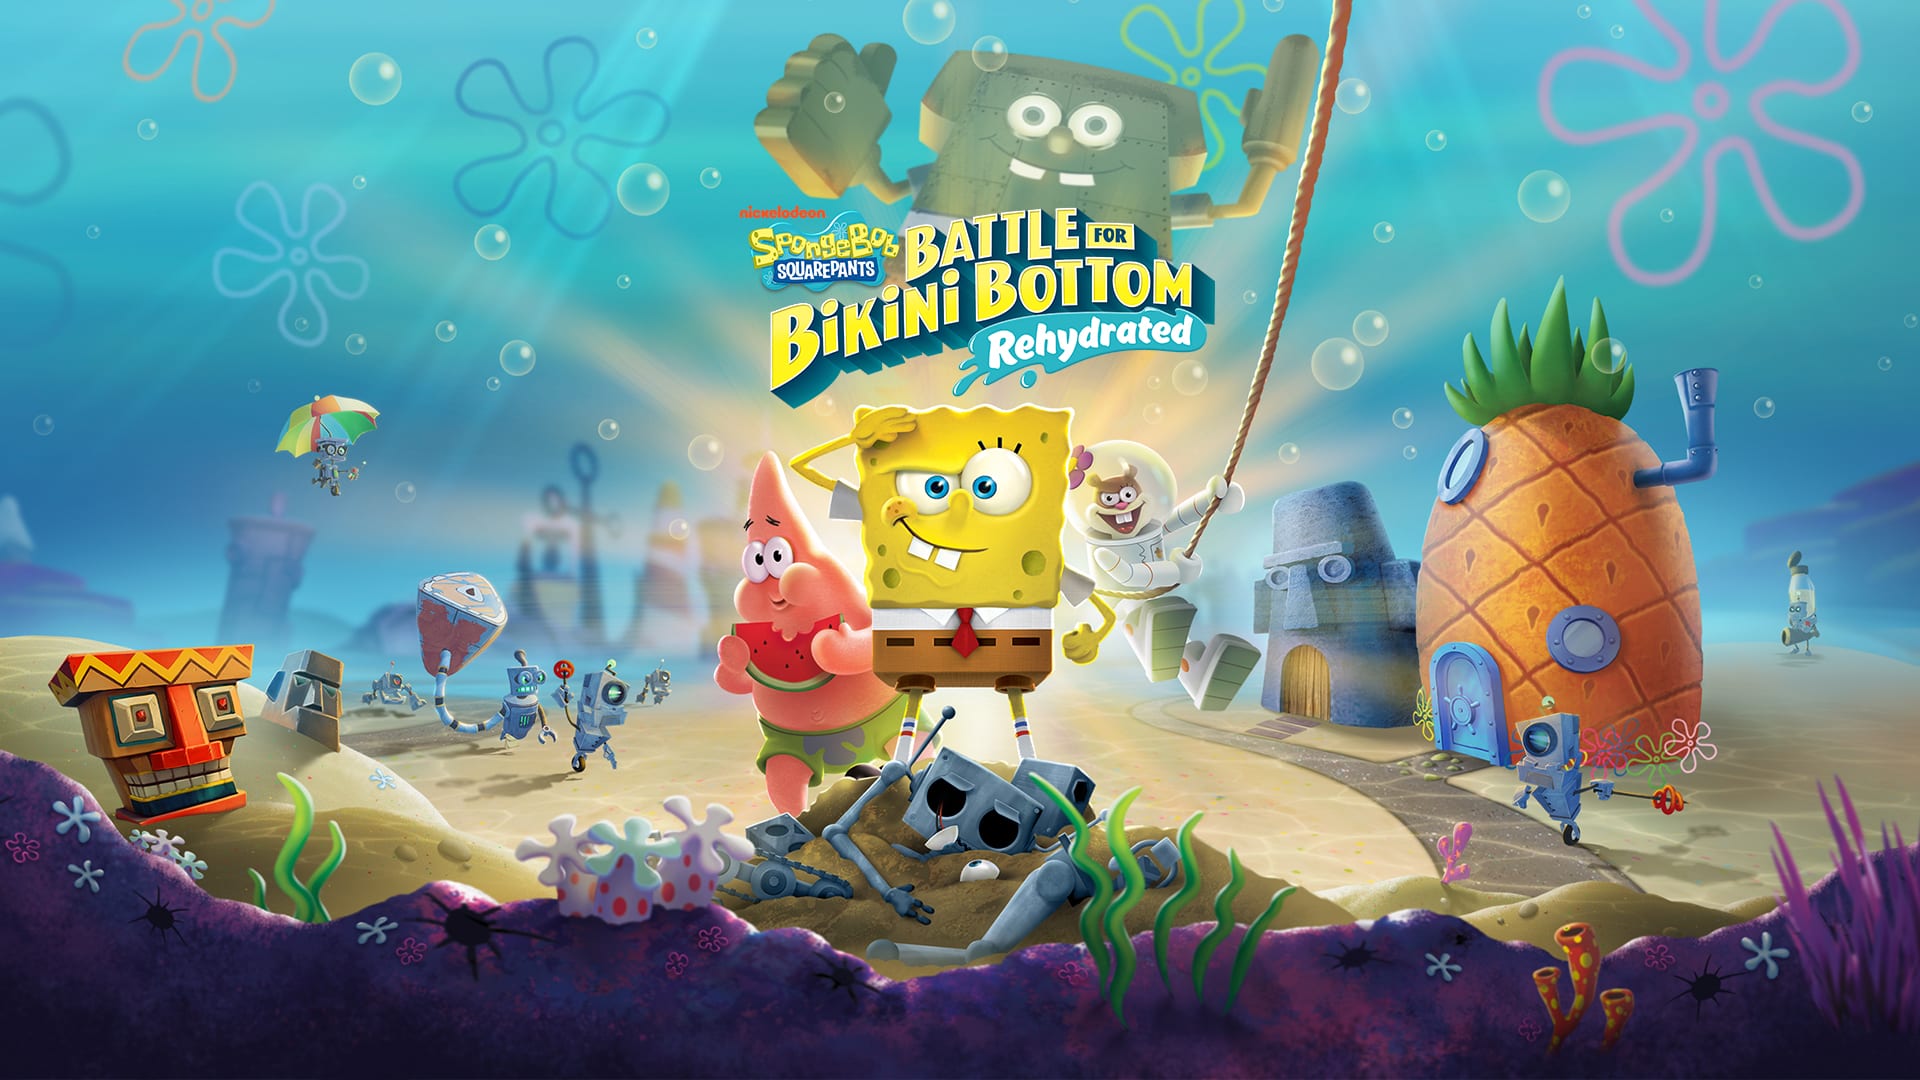 spongebob, co-op, local multiplayer